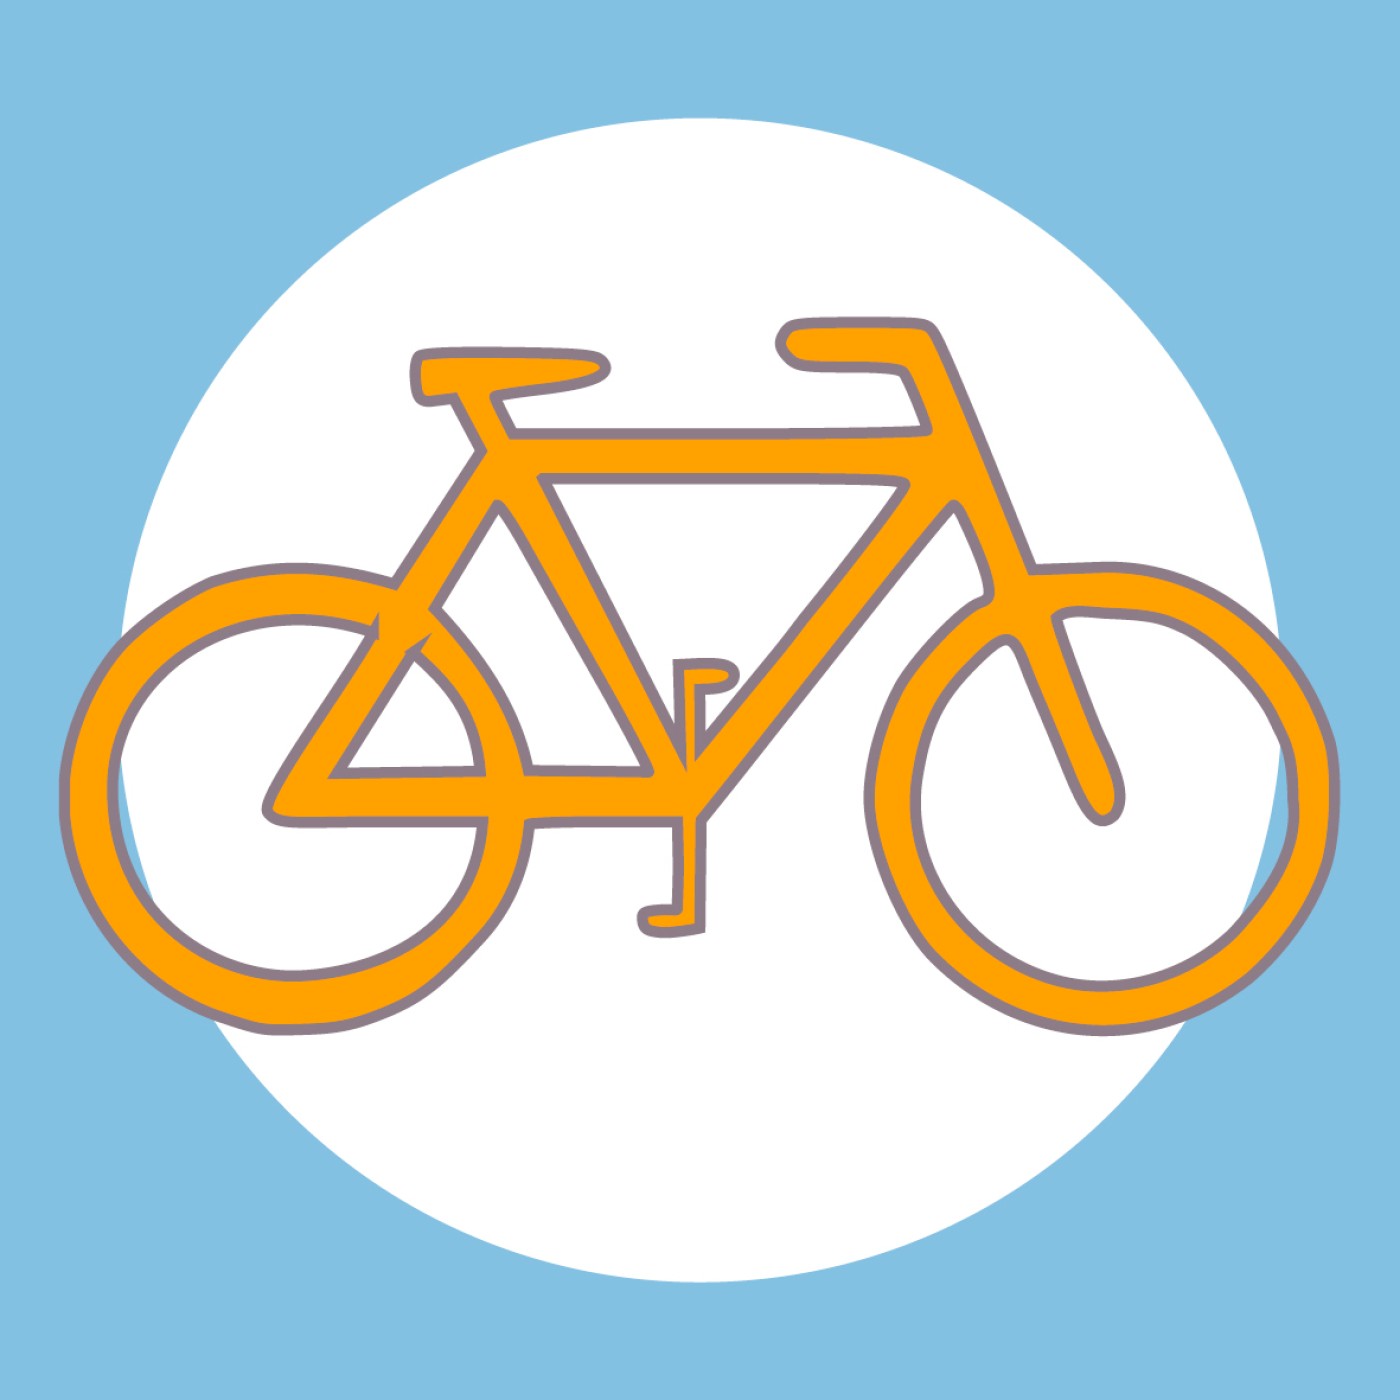 : Gezeichnetes Fahrrad auf blauem Hintergrund